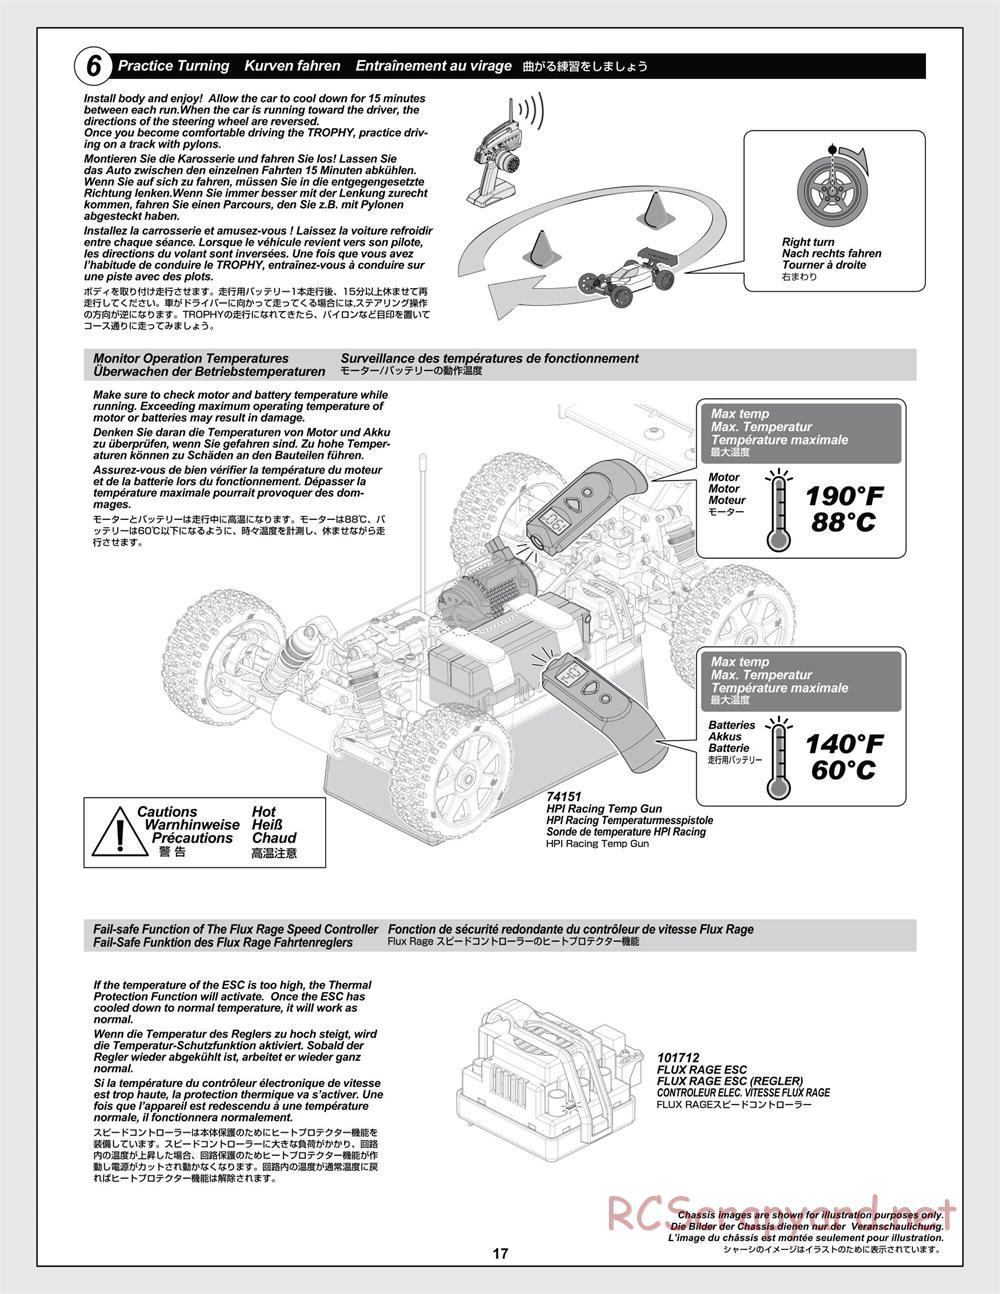 HPI - Trophy Flux Buggy - Manual - Page 17